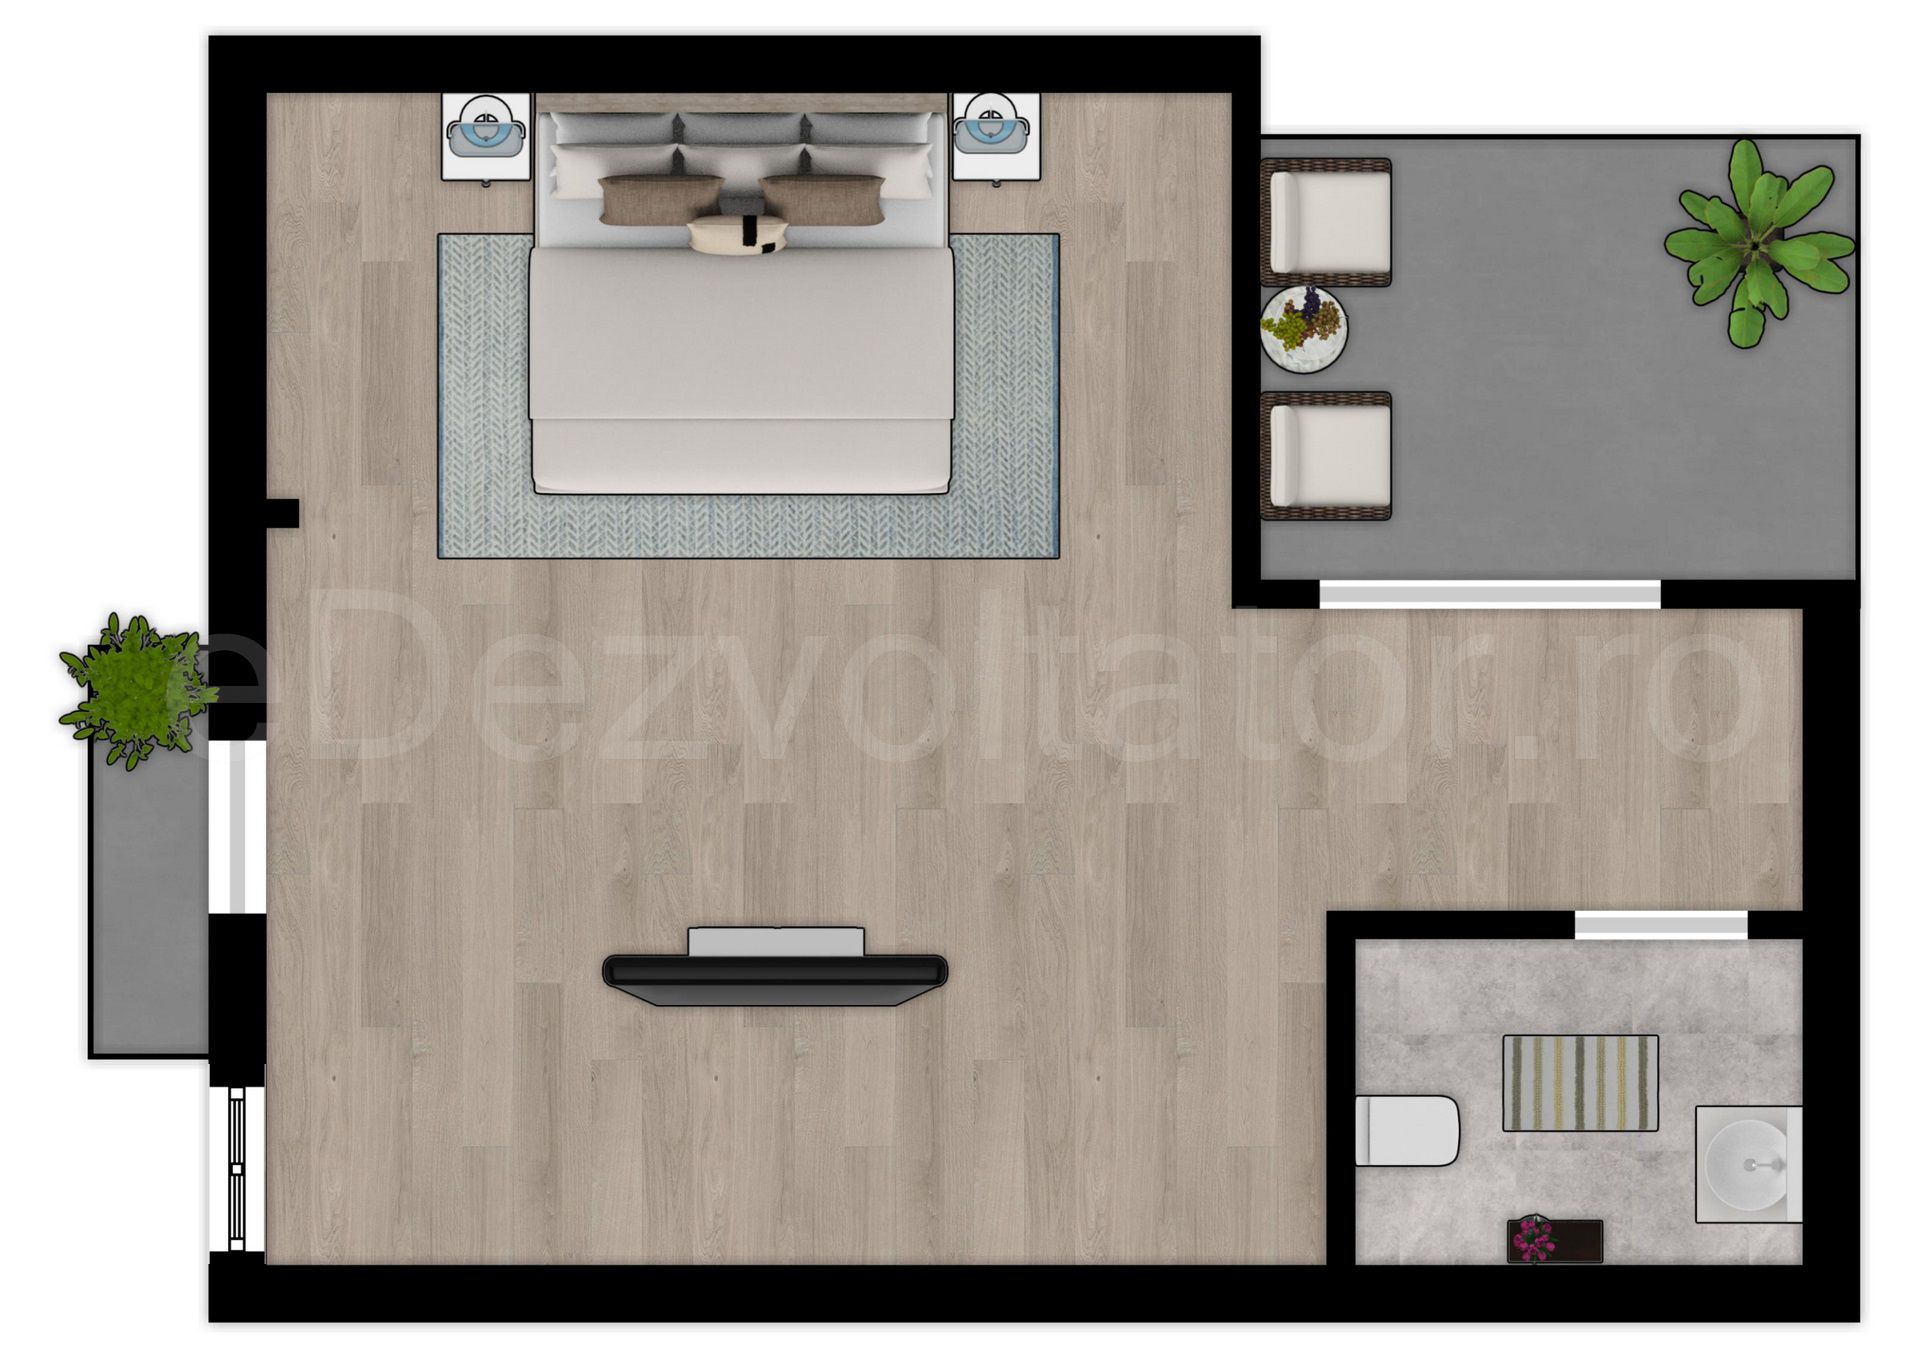 Proiecție 2D mansardă Vila duplex cu un etaj și mansardă 146 mp DaVinci Residence